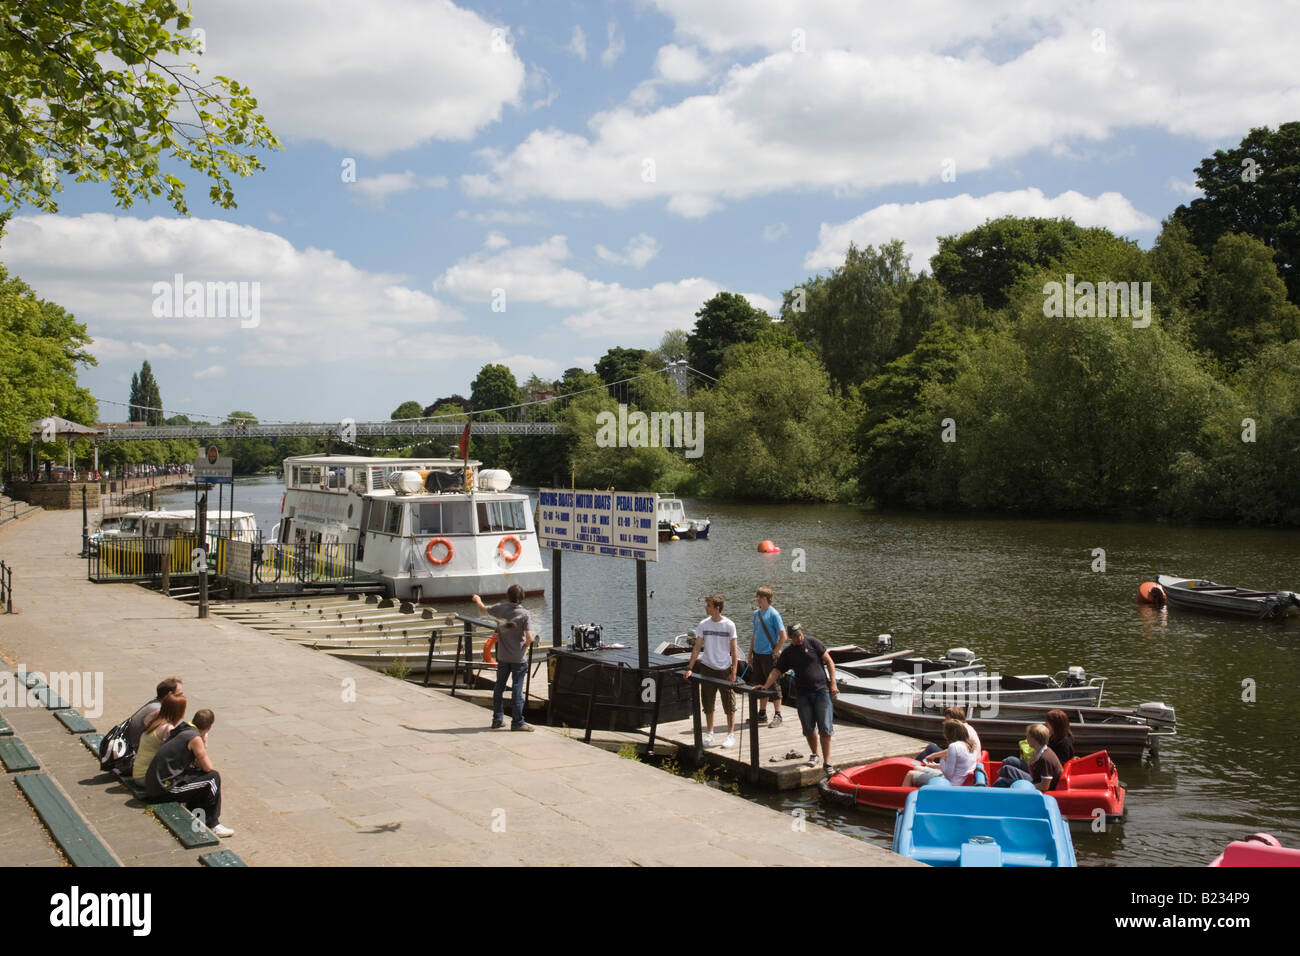 Showboat sul fiume Dee con noleggio barche e persone sul lungofiume in estate. Chester Cheshire England Regno Unito Foto Stock